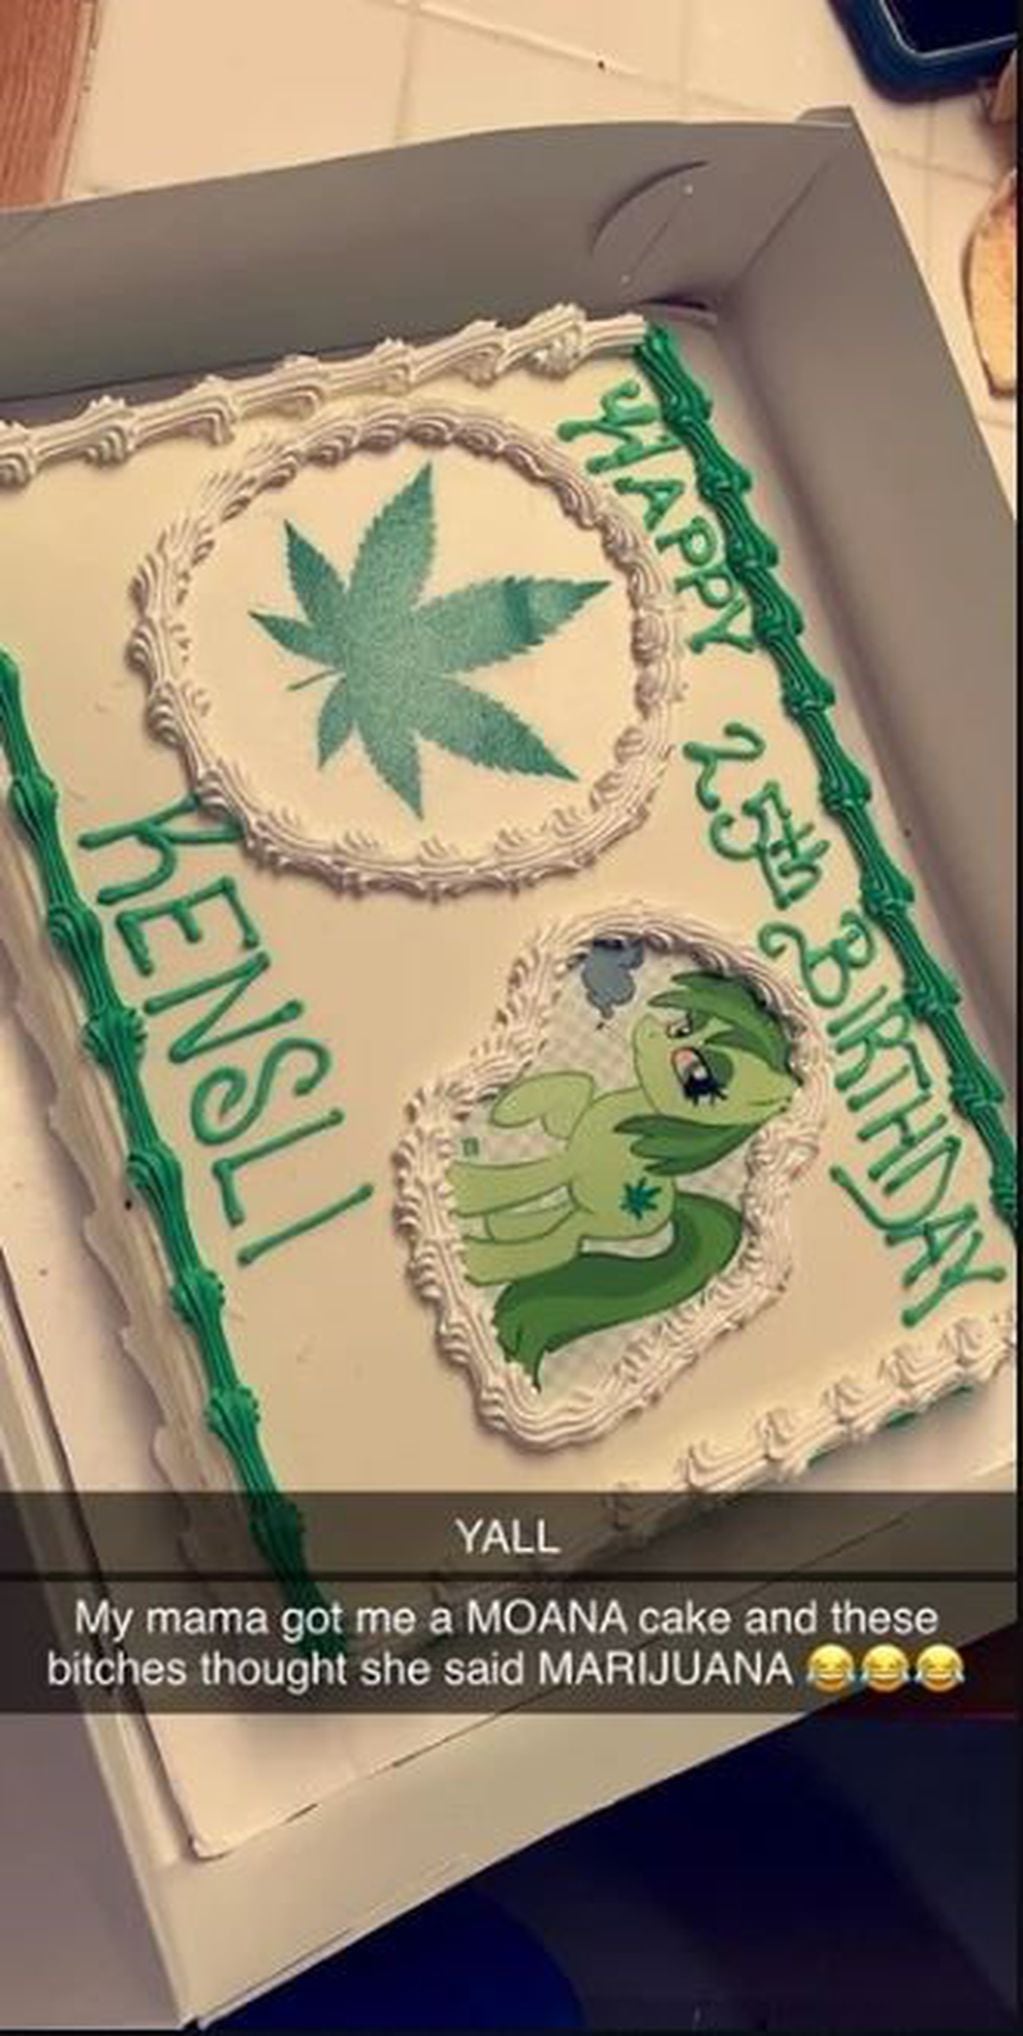 Pidió una torta de Moana, pero le entendieron "marihuana" y el resultado fue hilarante